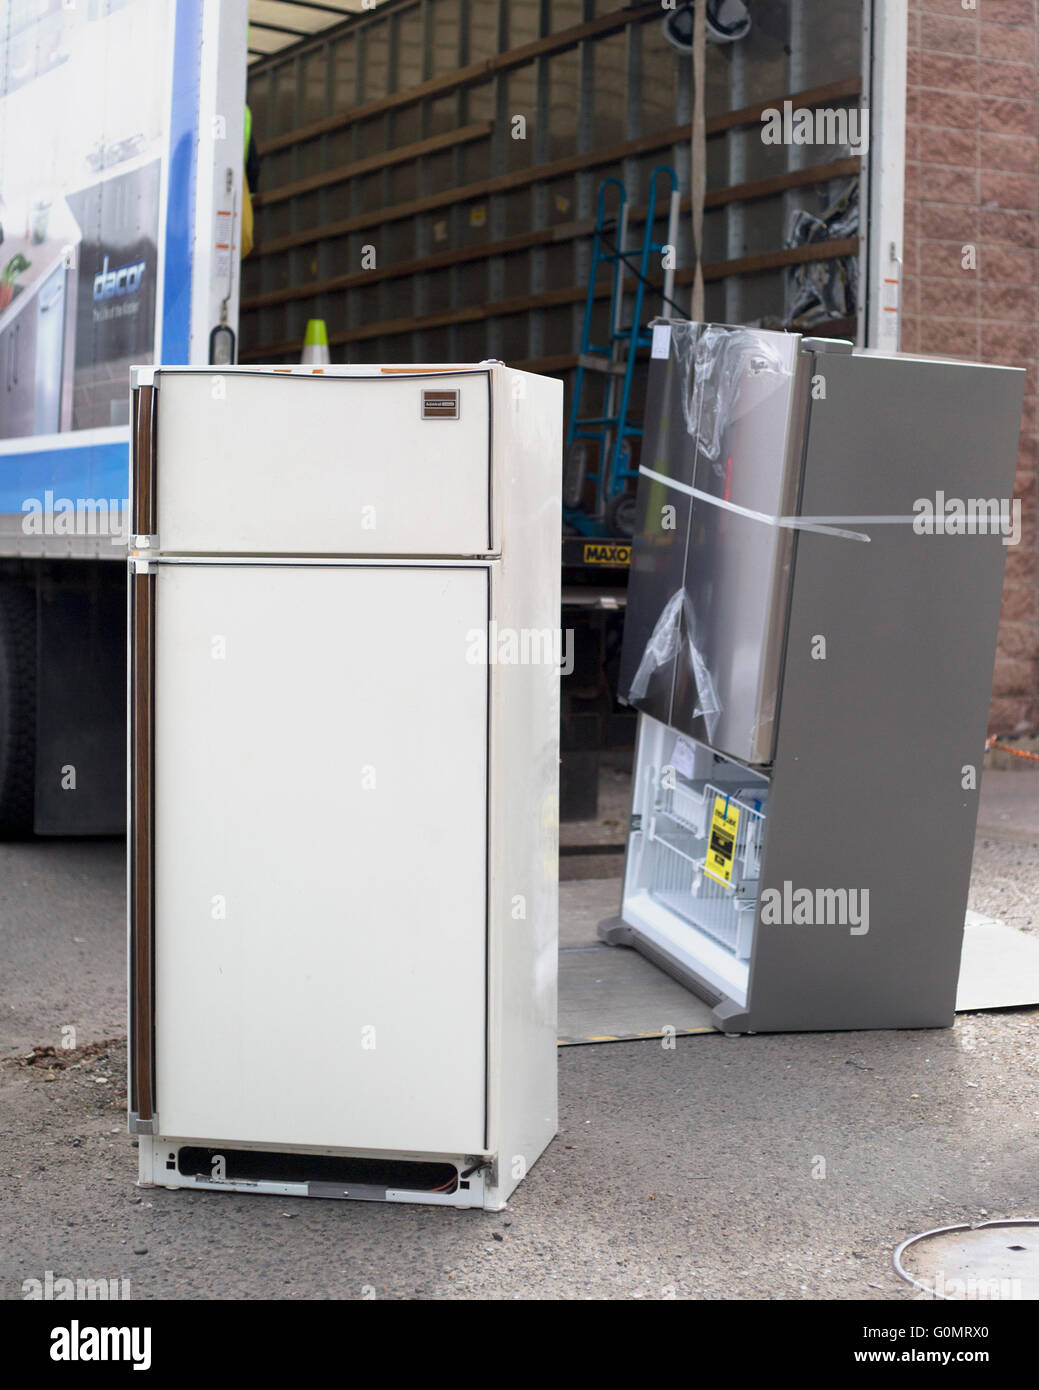 Un réfrigérateur obsolète vieux de plusieurs décennies (façade) est transporté pour être mis au rebut de manière appropriée et remplacé par un nouvel appareil plus économe en énergie (à l'arrière). Banque D'Images